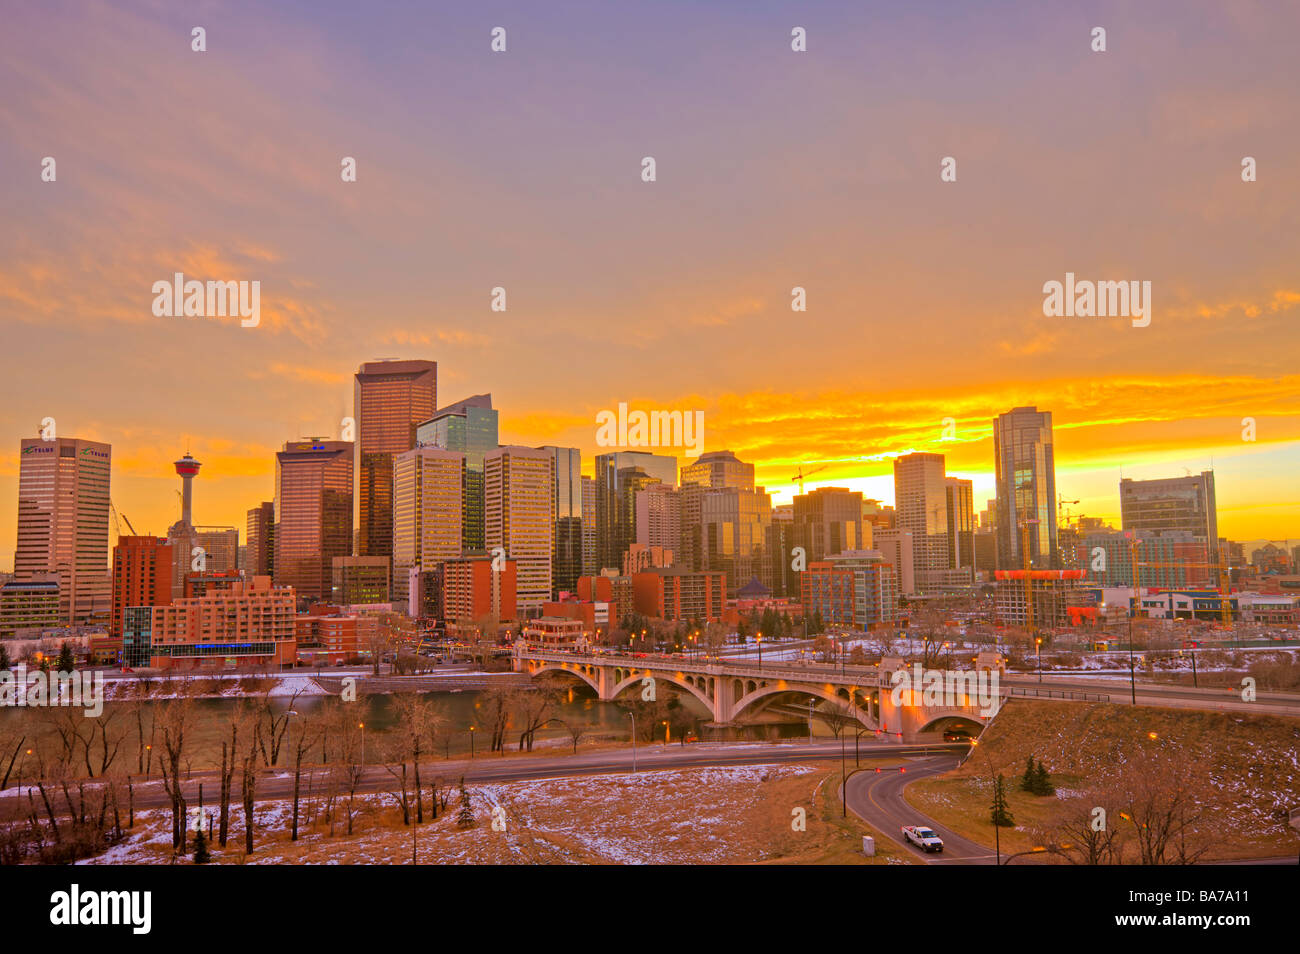 Skyline von Calgary hohen Hochhäusern der Calgary Tower und der Centre Street Bridge bei Sonnenuntergang statt. Stockfoto